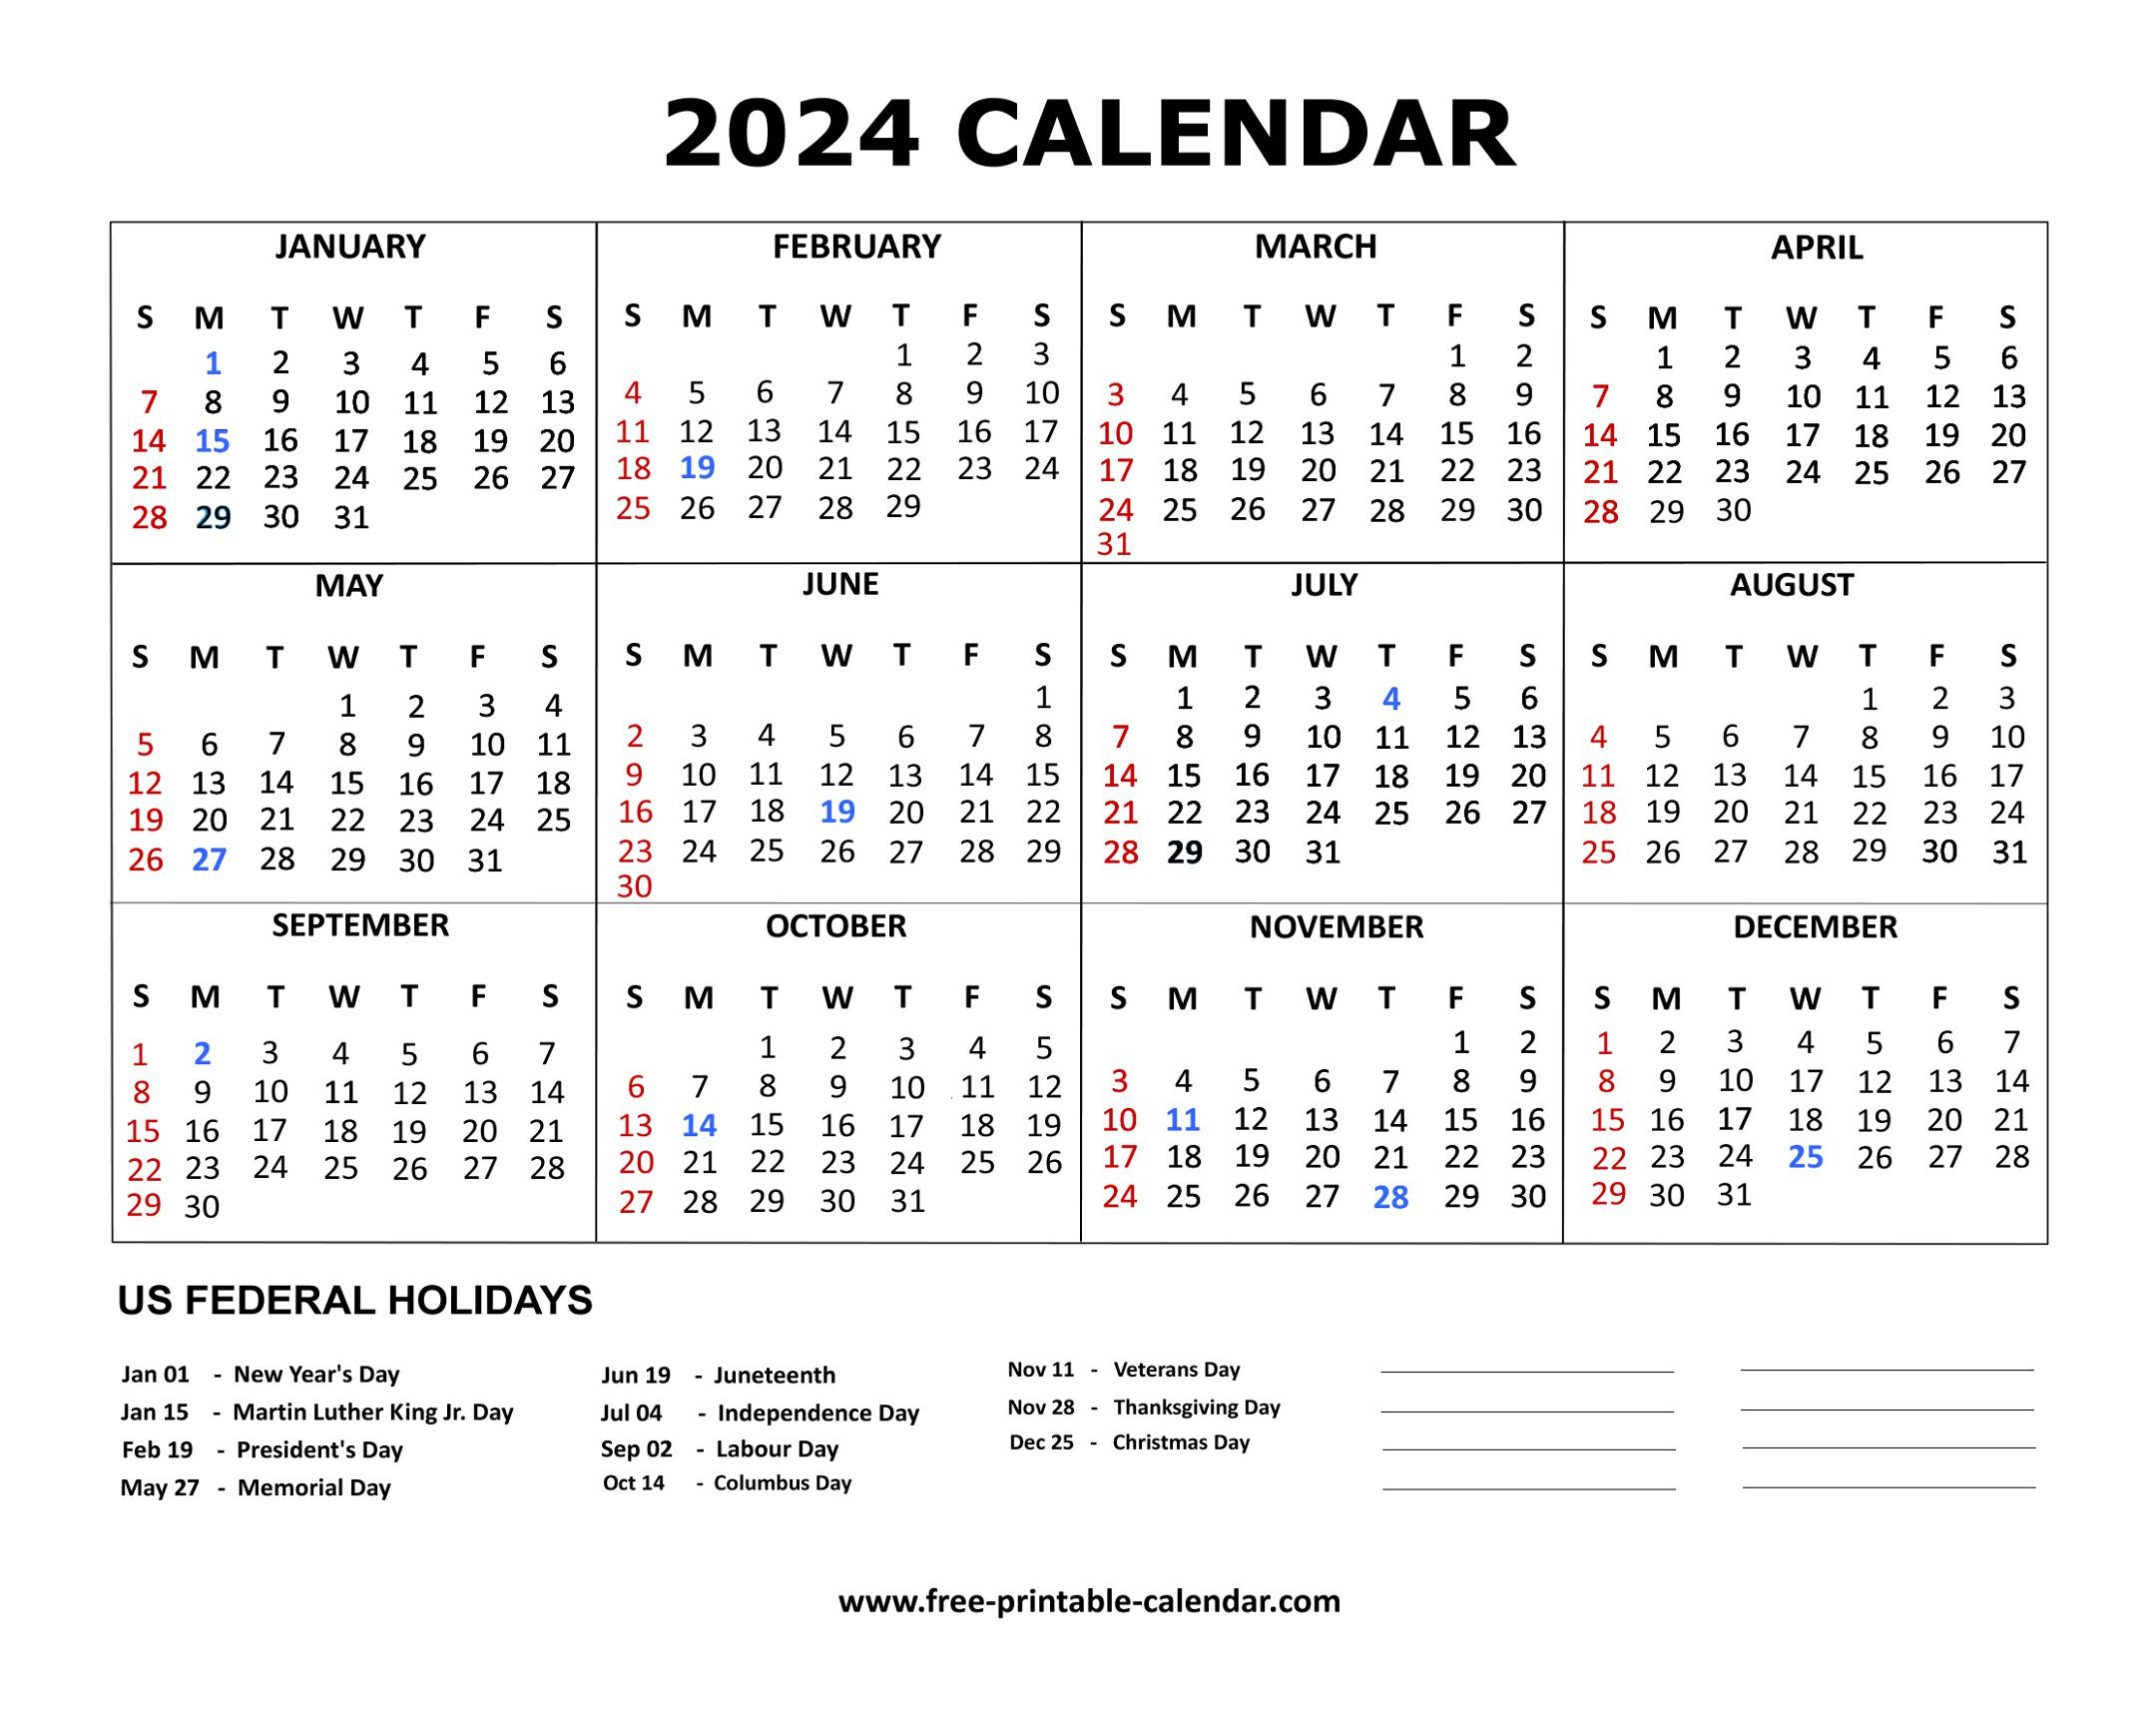 2024 Calendar | Free Calendar For 2024